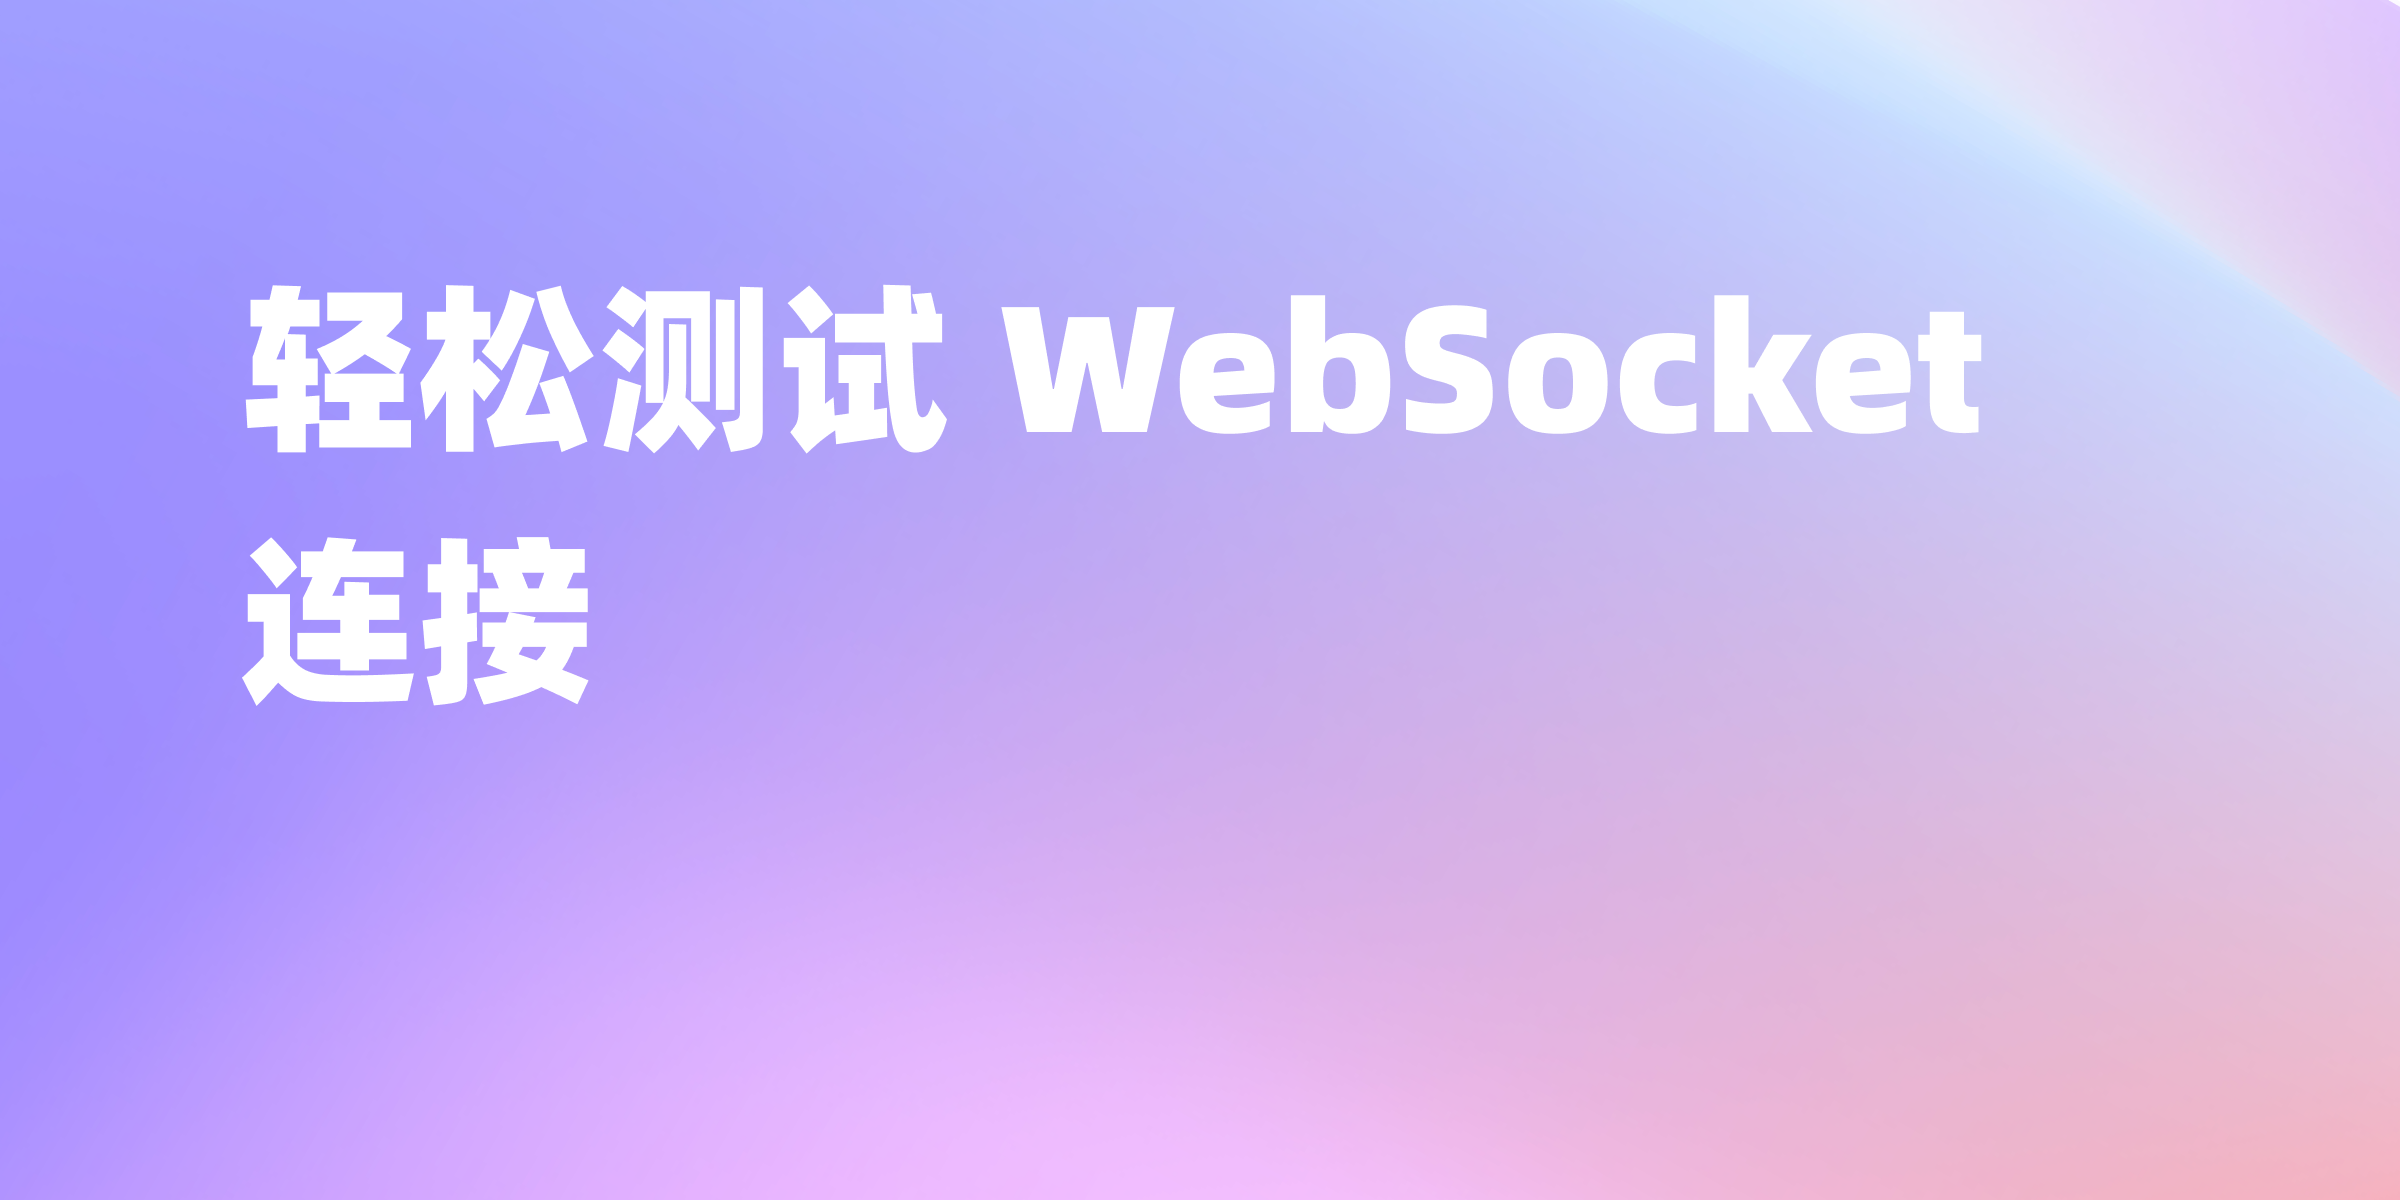 WebSocket 在线测试工具-最佳选择